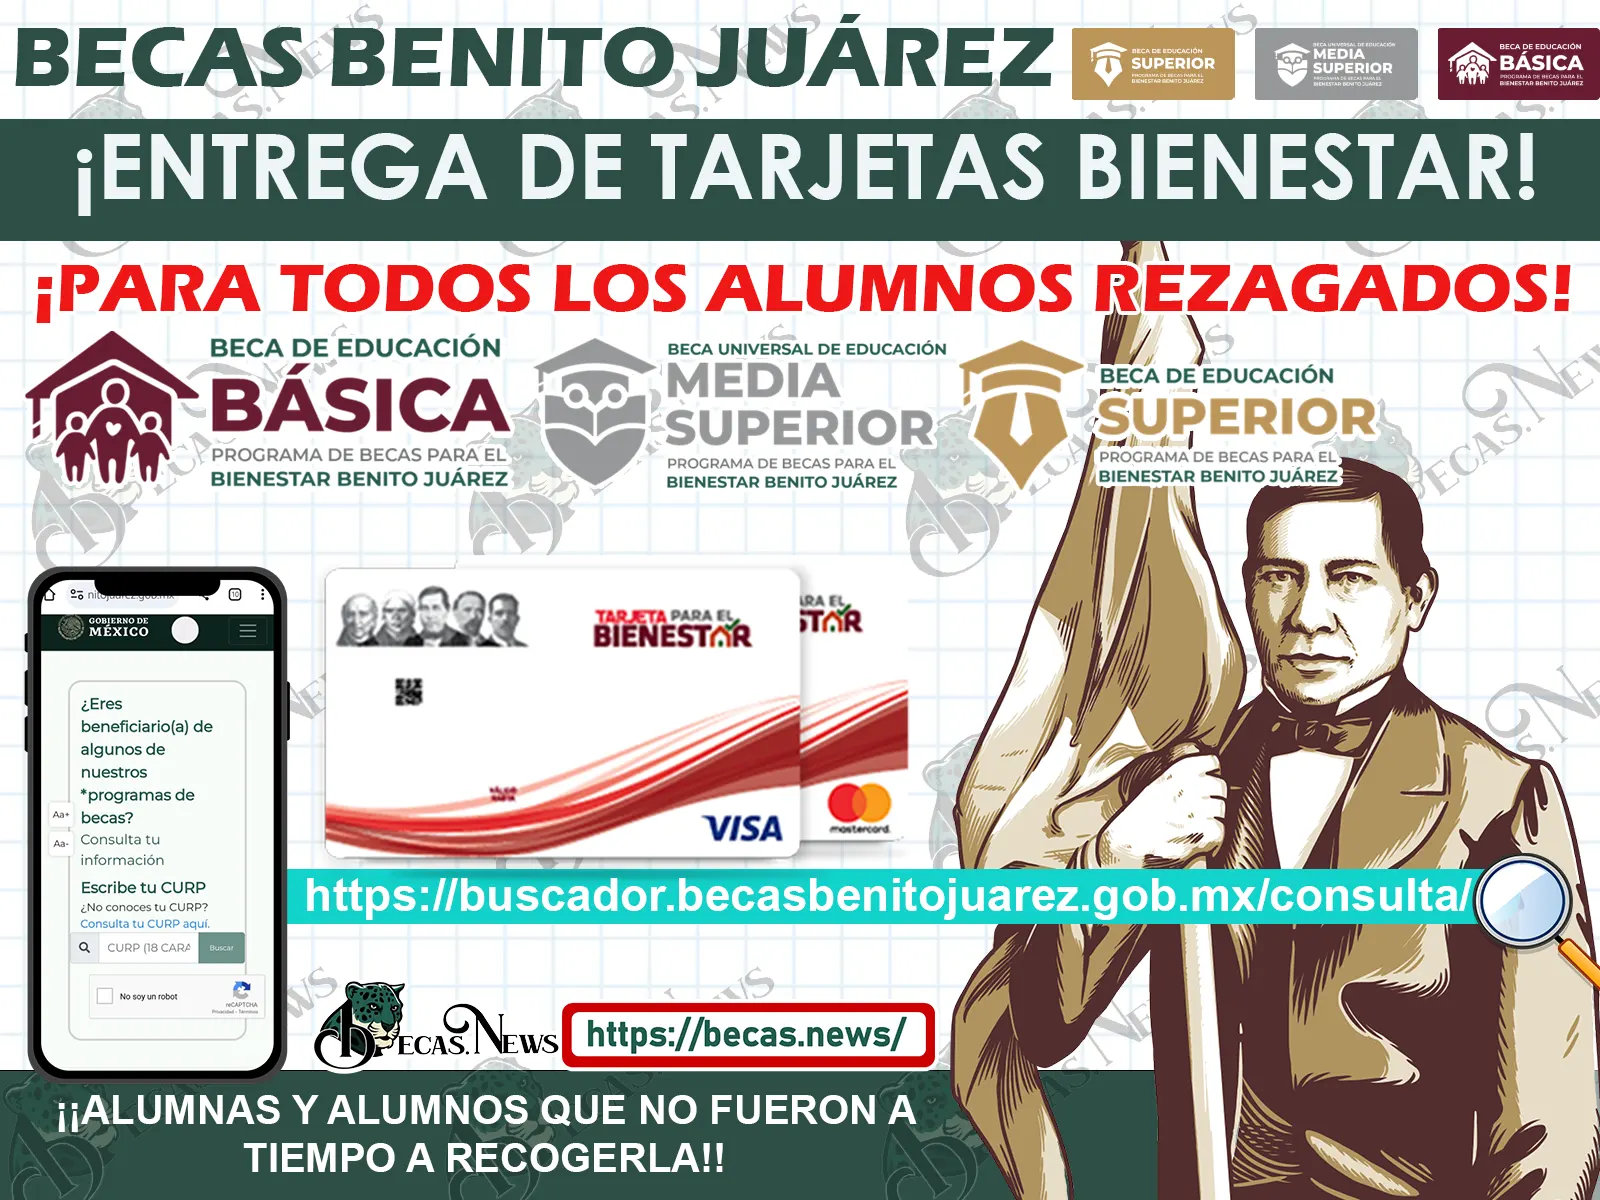 ¡AVISO URGENTE! Becas Benito Juárez: Confirmada la ENTREGA MASIVA de Tarjetas Bienestar en NOVIEMBRE por la CNBBBJ